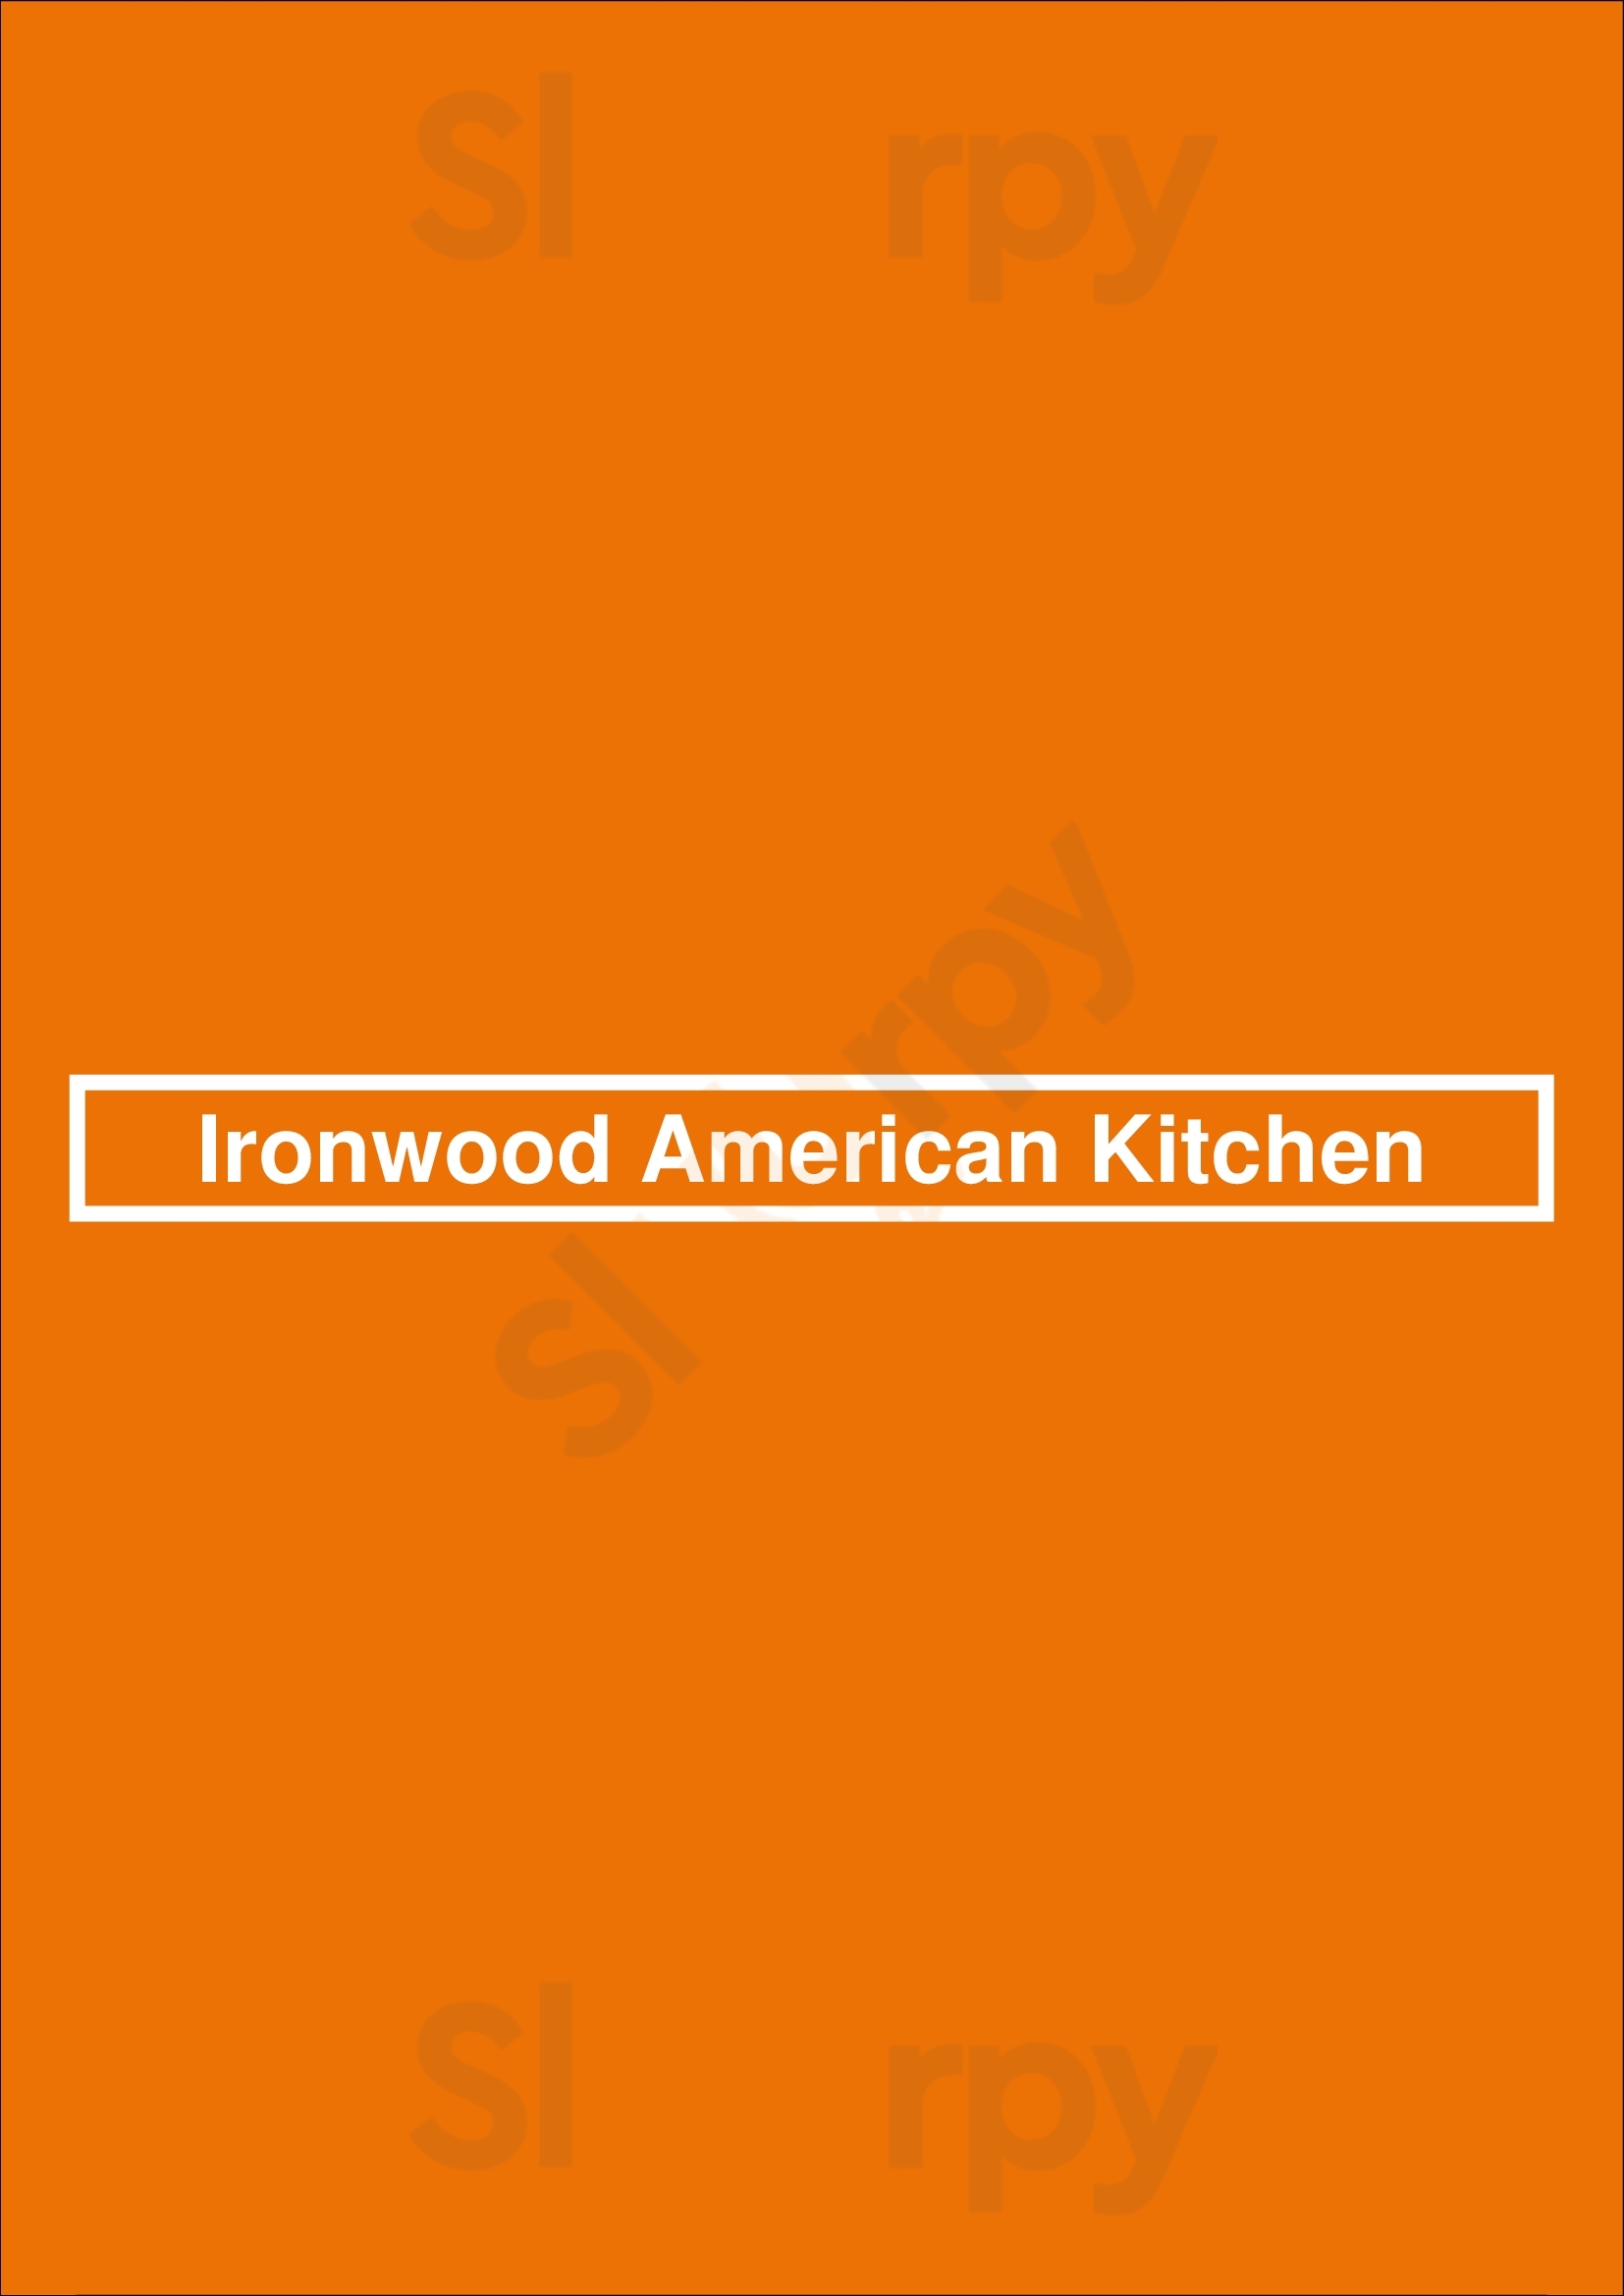 Ironwood American Kitchen Scottsdale Menu - 1